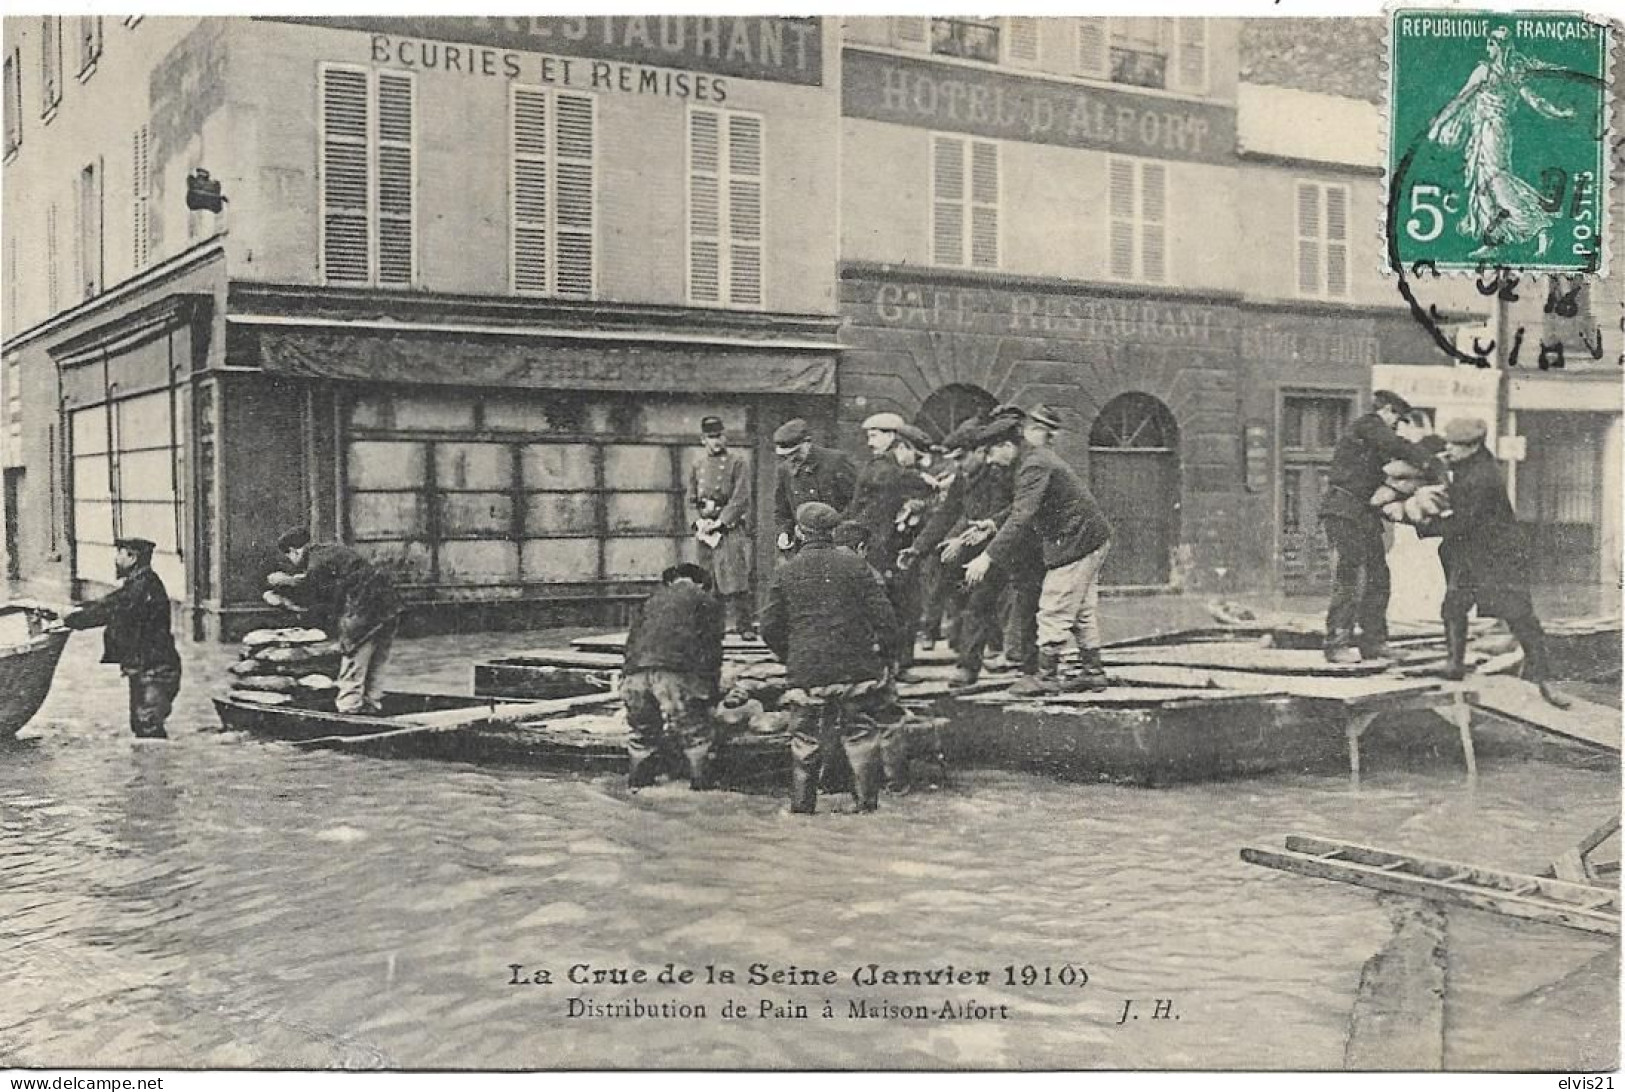 PARIS Crue De Janvier 1910. Distribution De Pain à Maison Alfort - Paris Flood, 1910